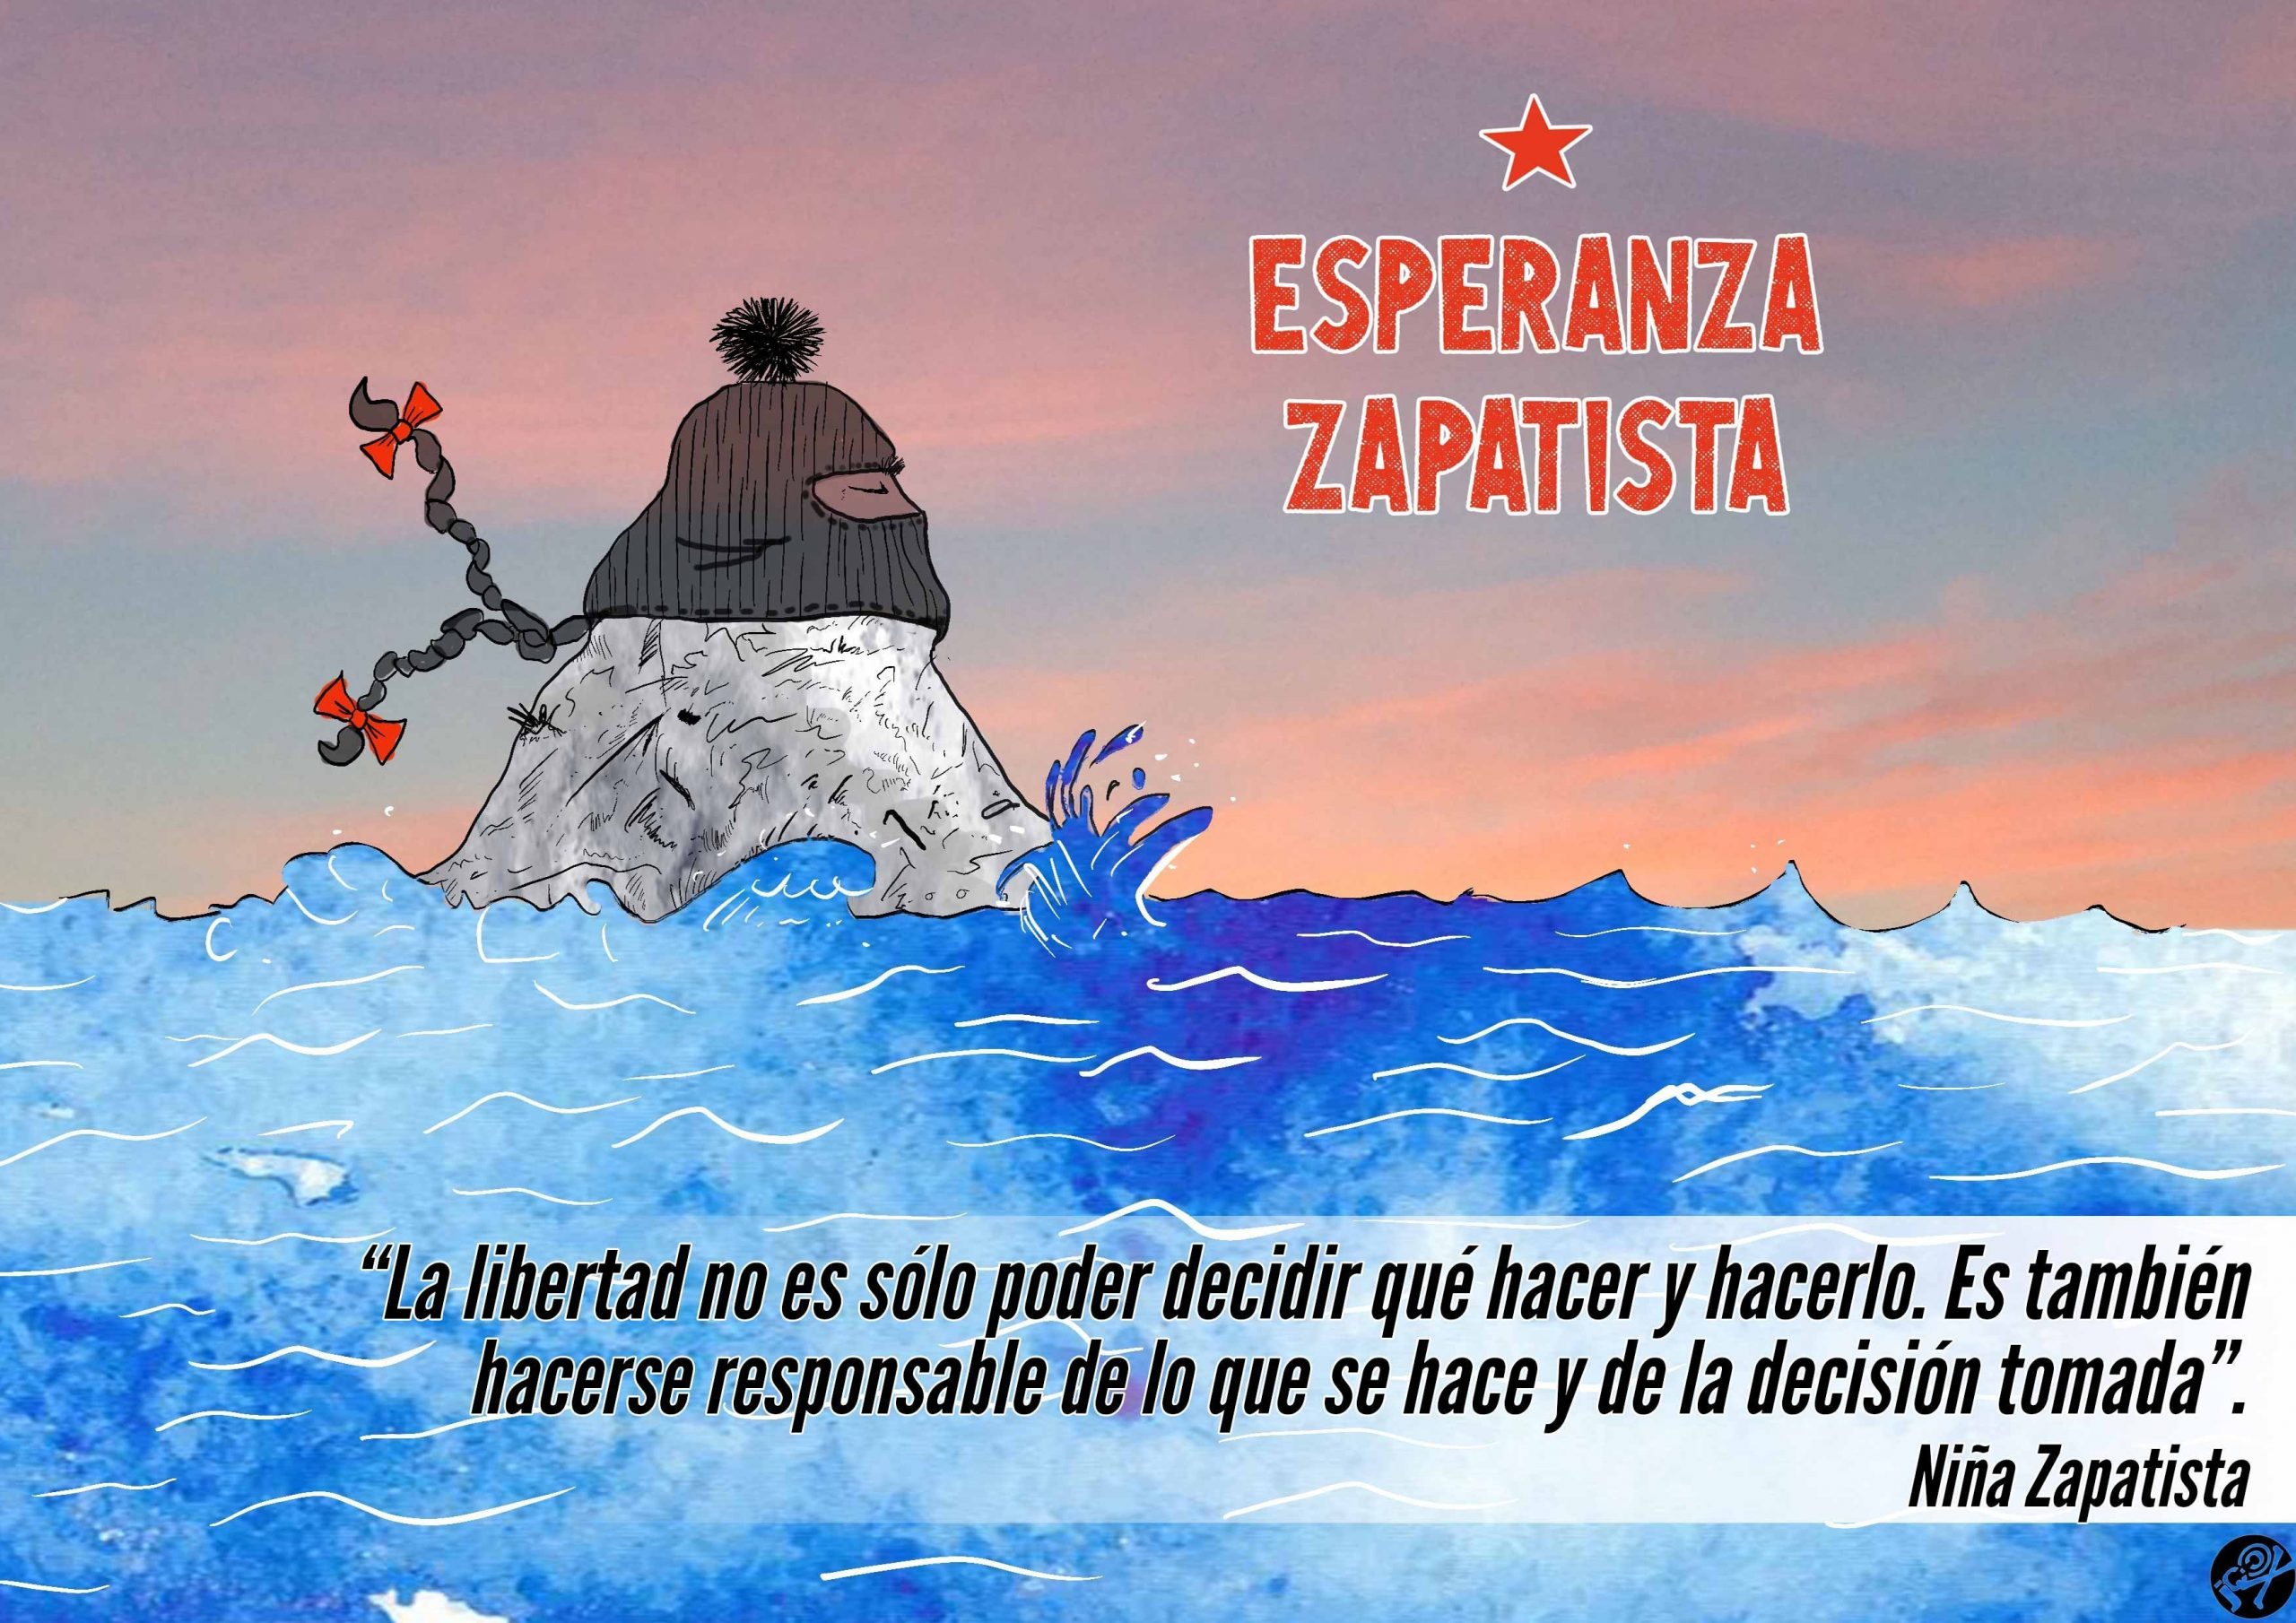 Novembersendung des Anarchistischen Hörfunkes – Die Reise der Zapatistas